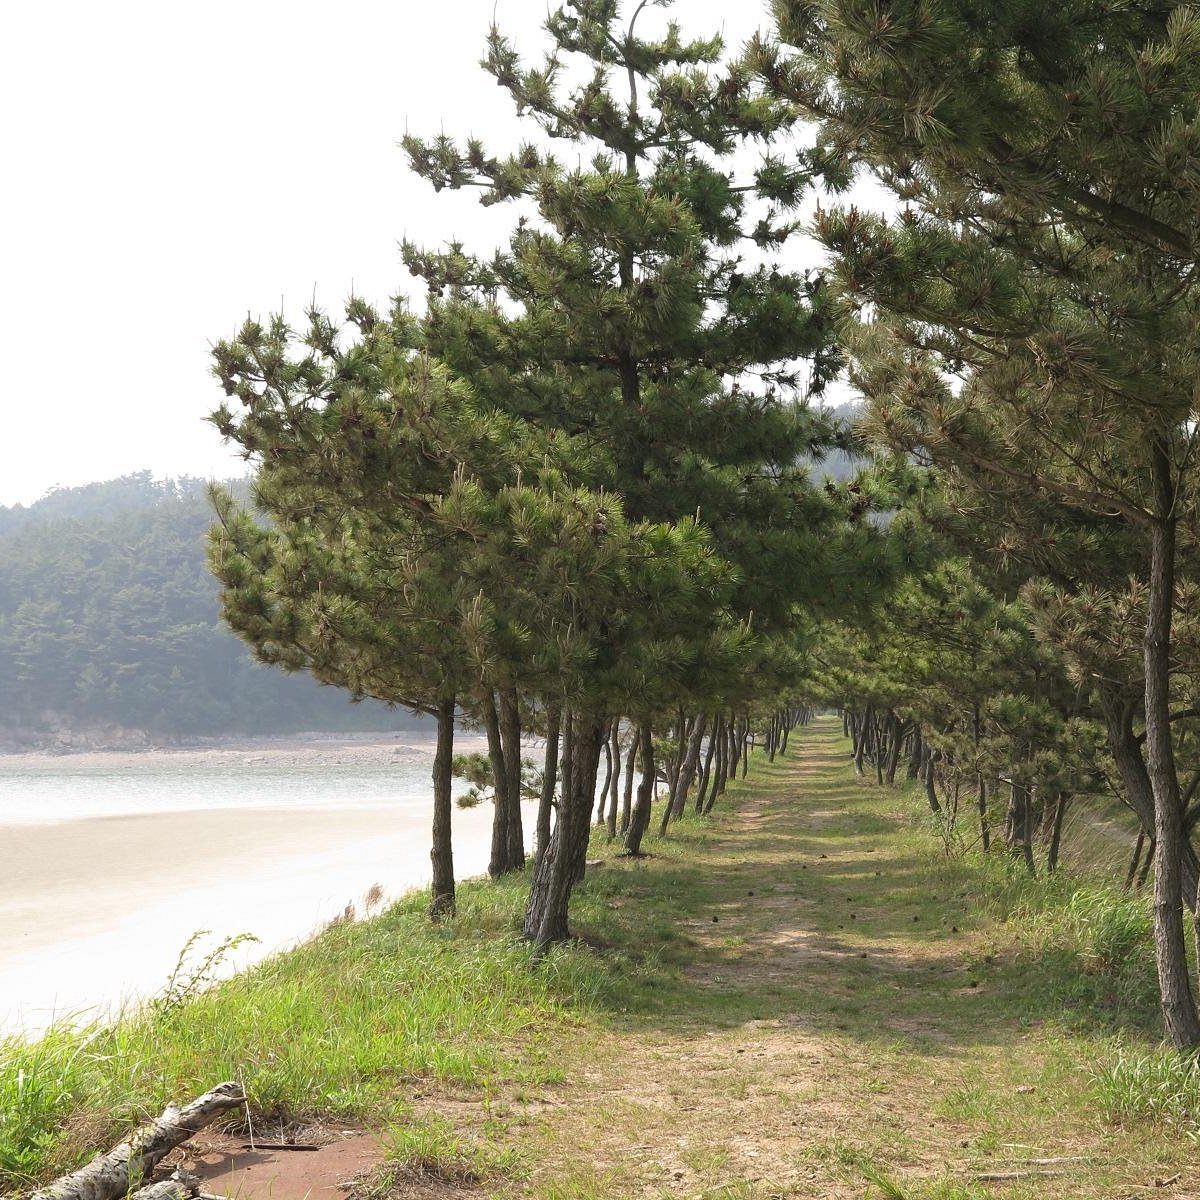 태안해안 국립공원 - 태안 - 태안해안 국립공원의 리뷰 - 트립어드바이저